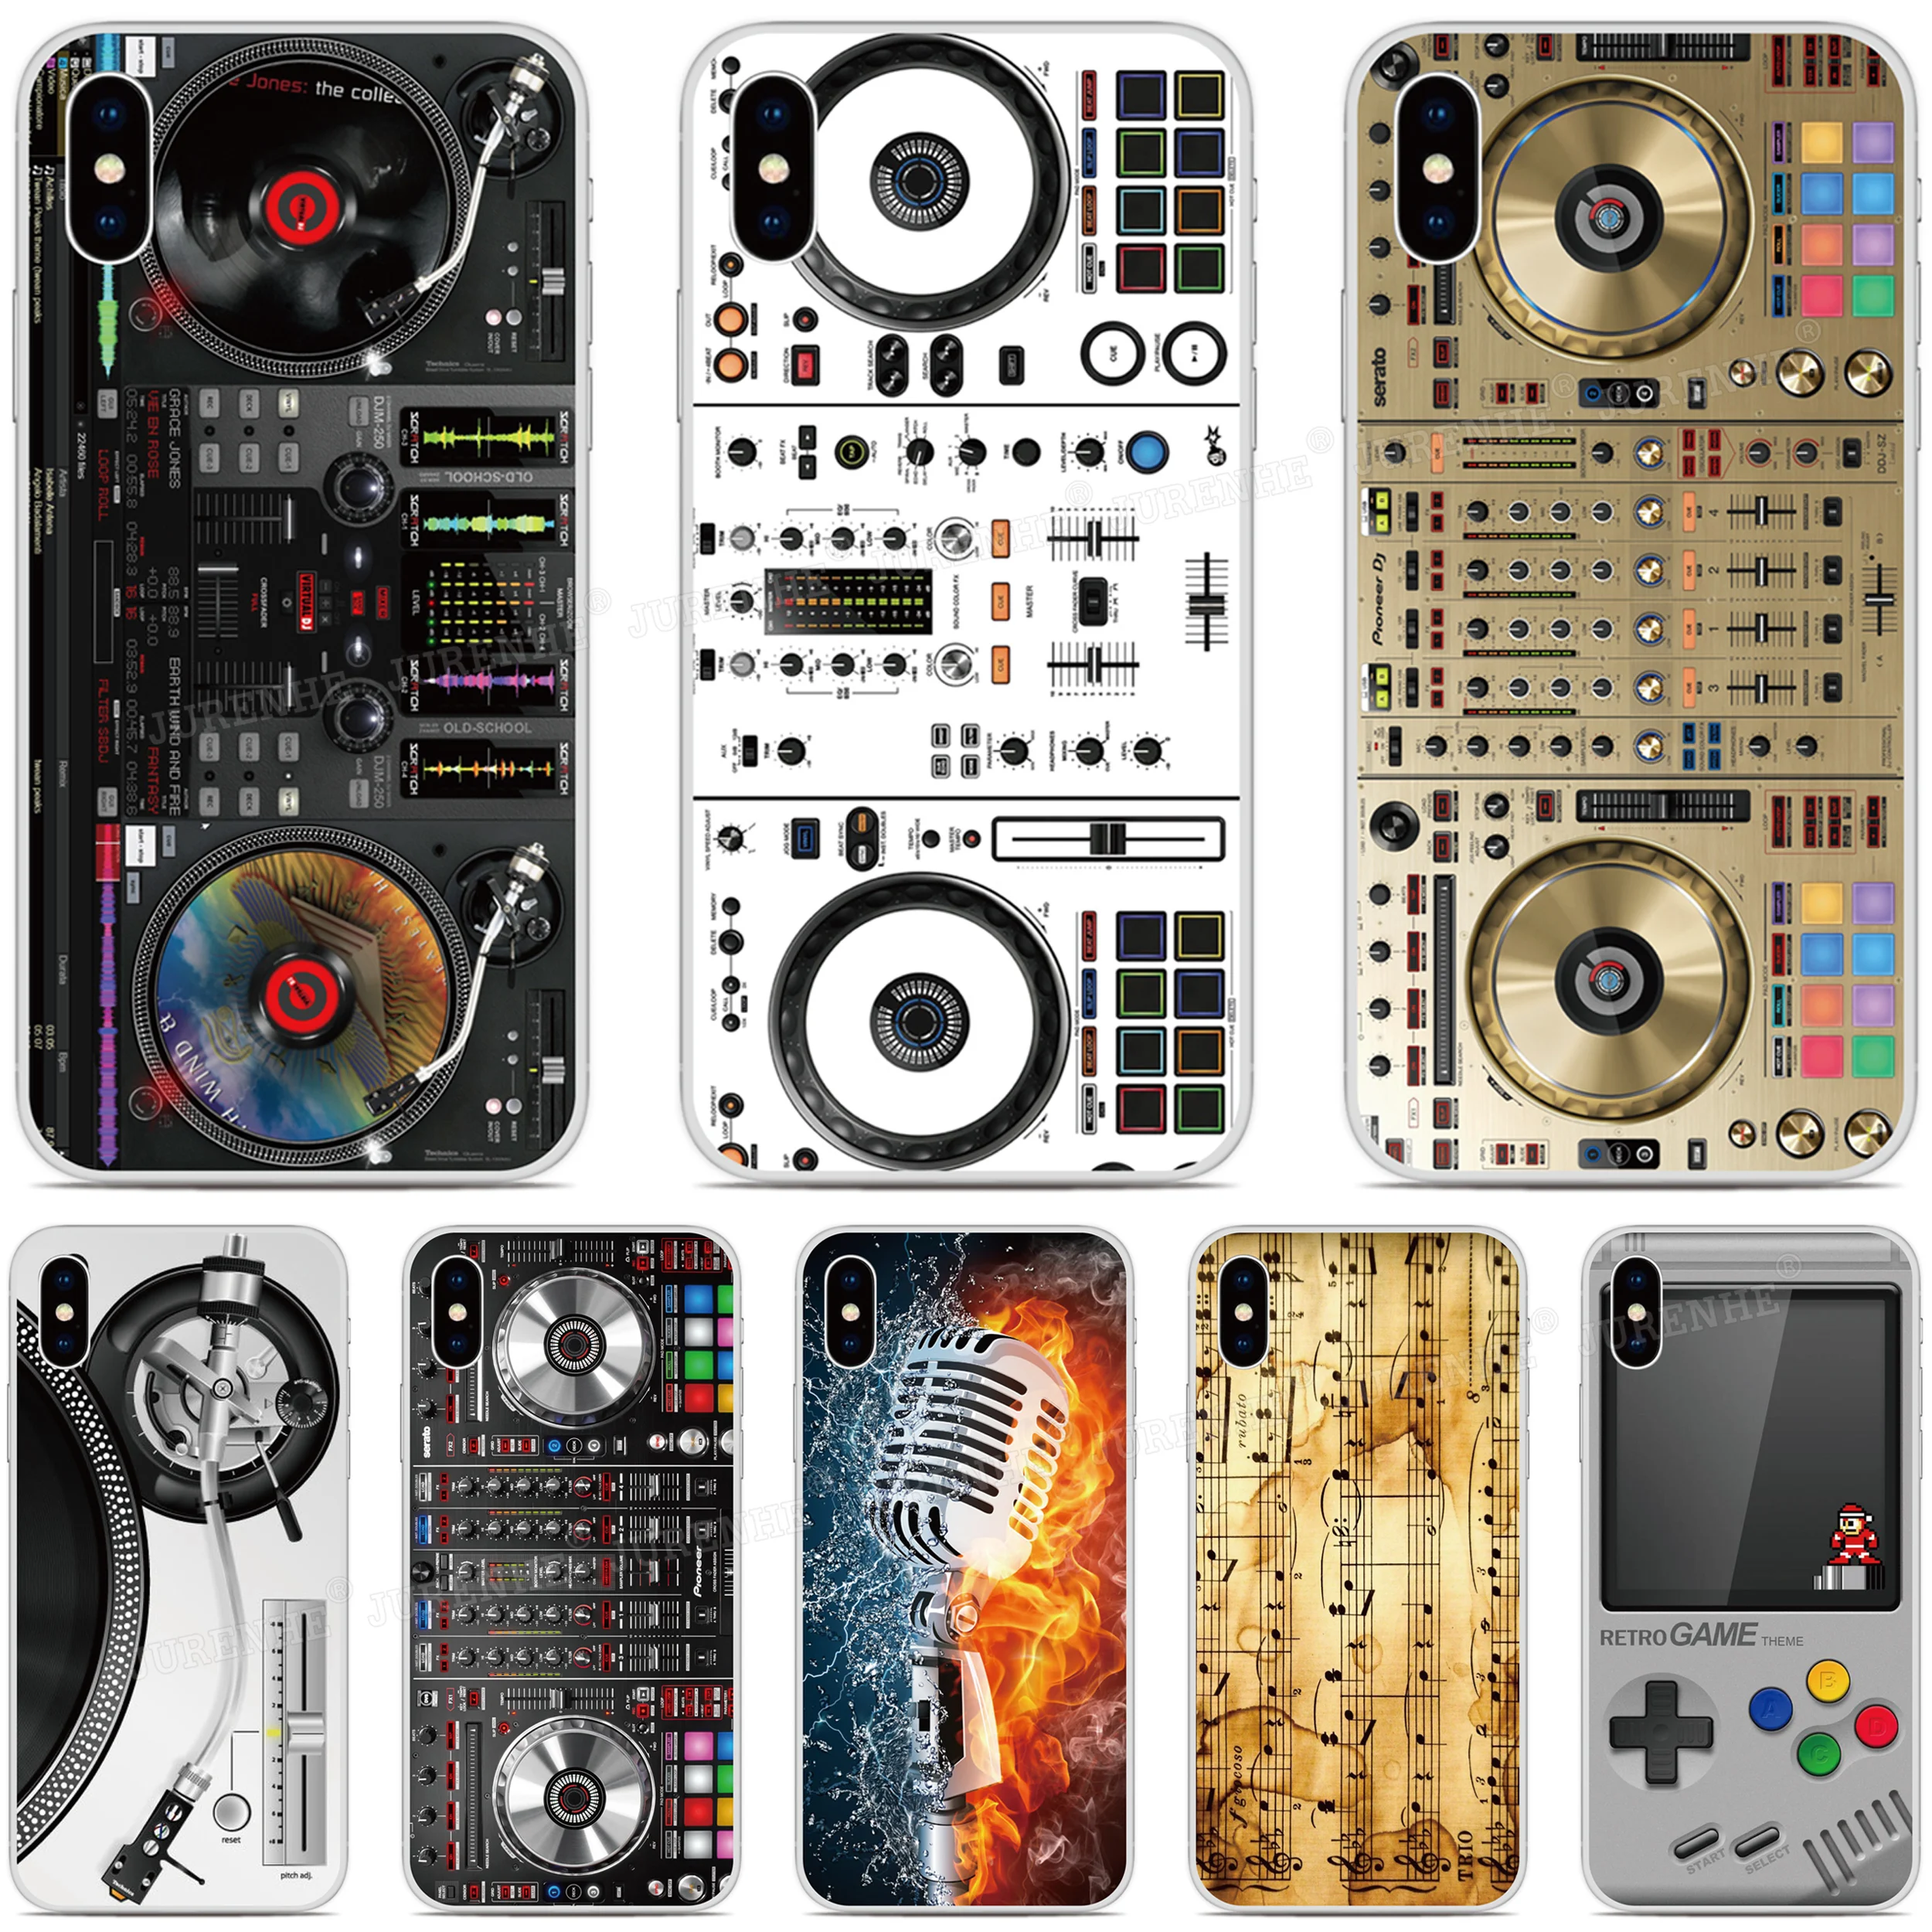 DJ Mixer Cover For LG Wing Harmony 4 K42 Q61 Q51 K52 K62 Q52 K92 K71 Q92 Q920 V30 Q7 K22 Plus Style3 L-41A V40 X Power 3 Case